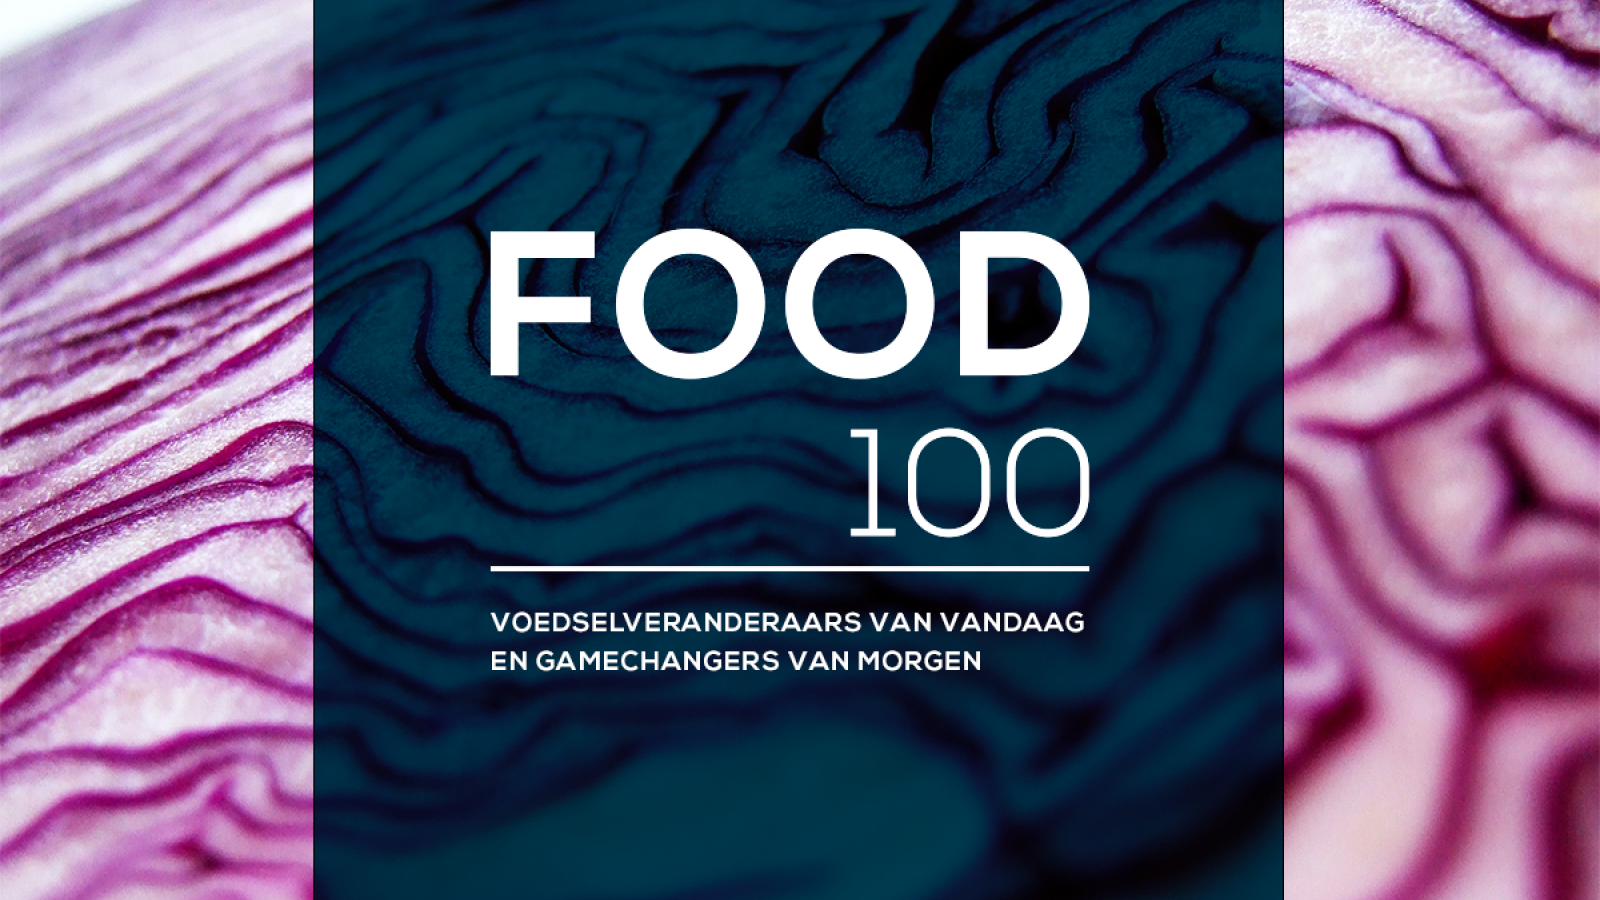 Nomineer nu gamechangers voor Food100!